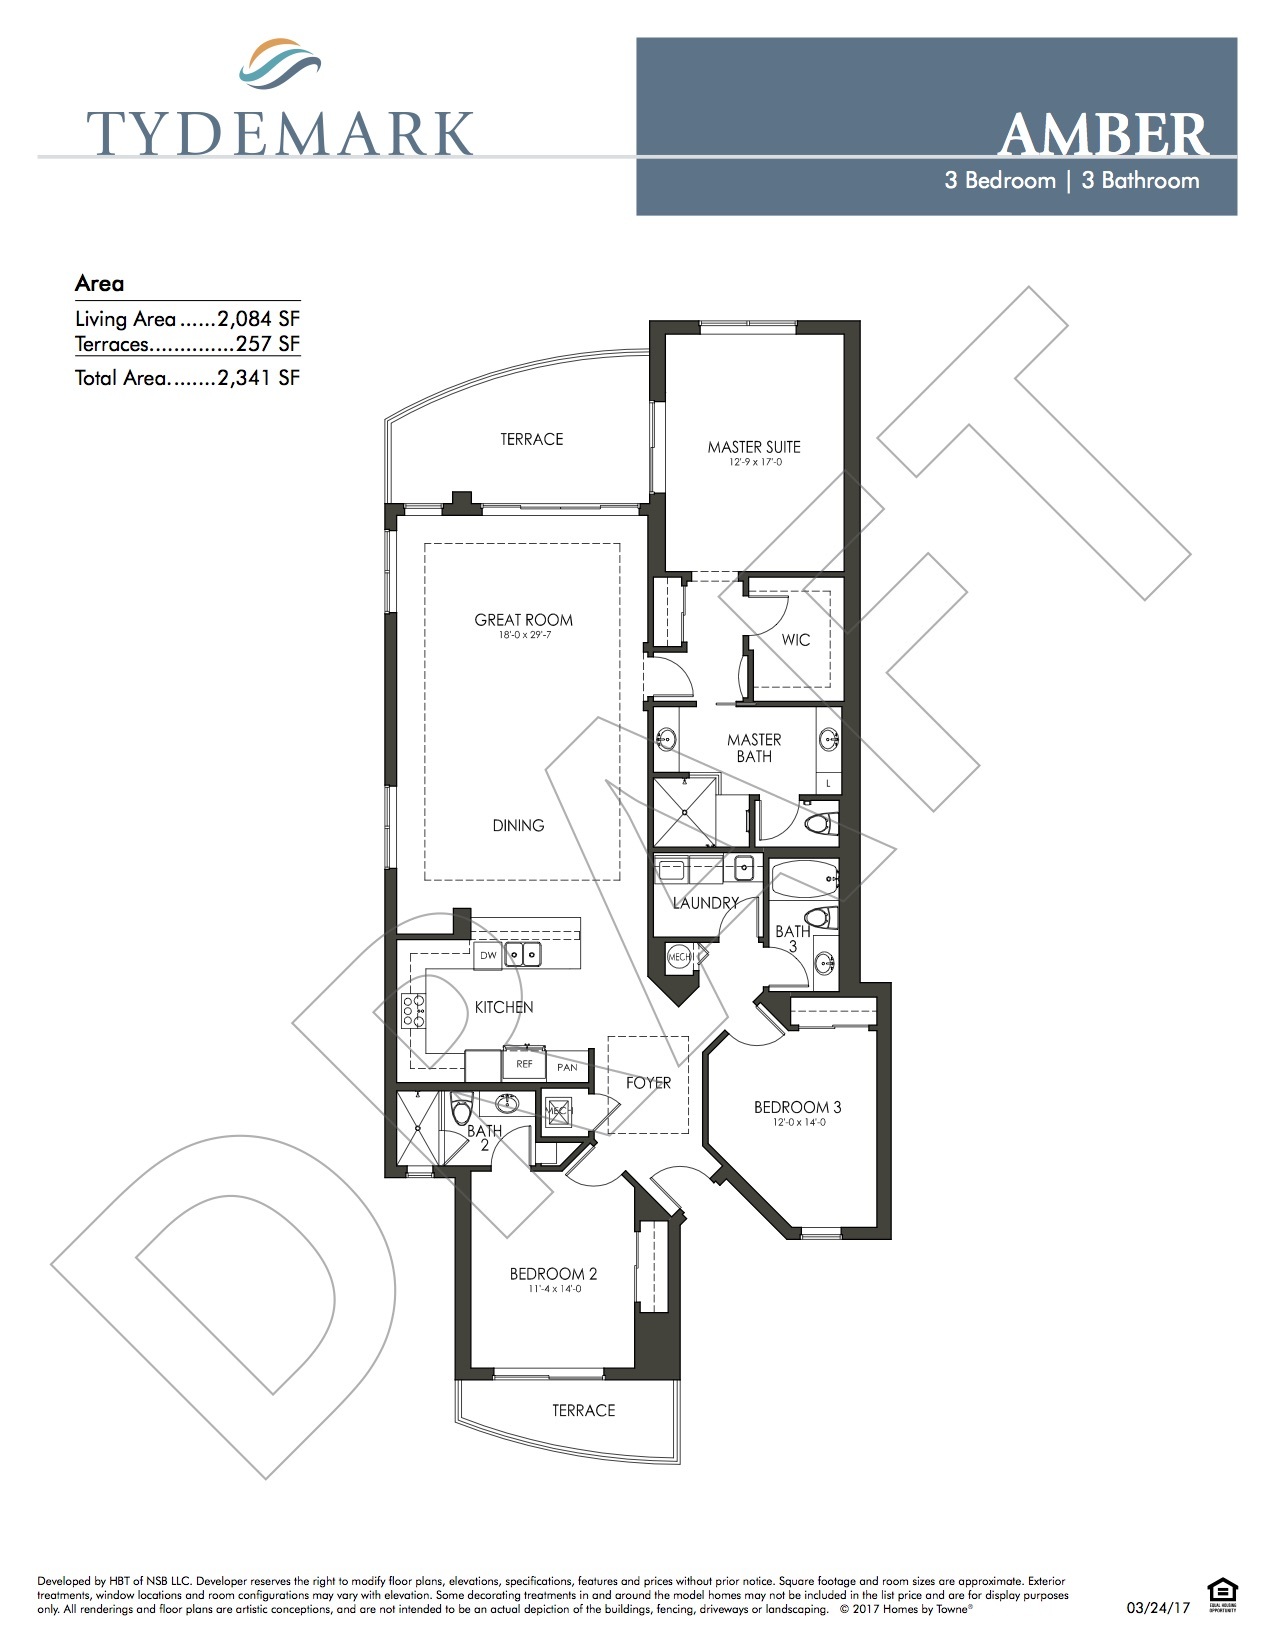 Amber floor plan — view layout below